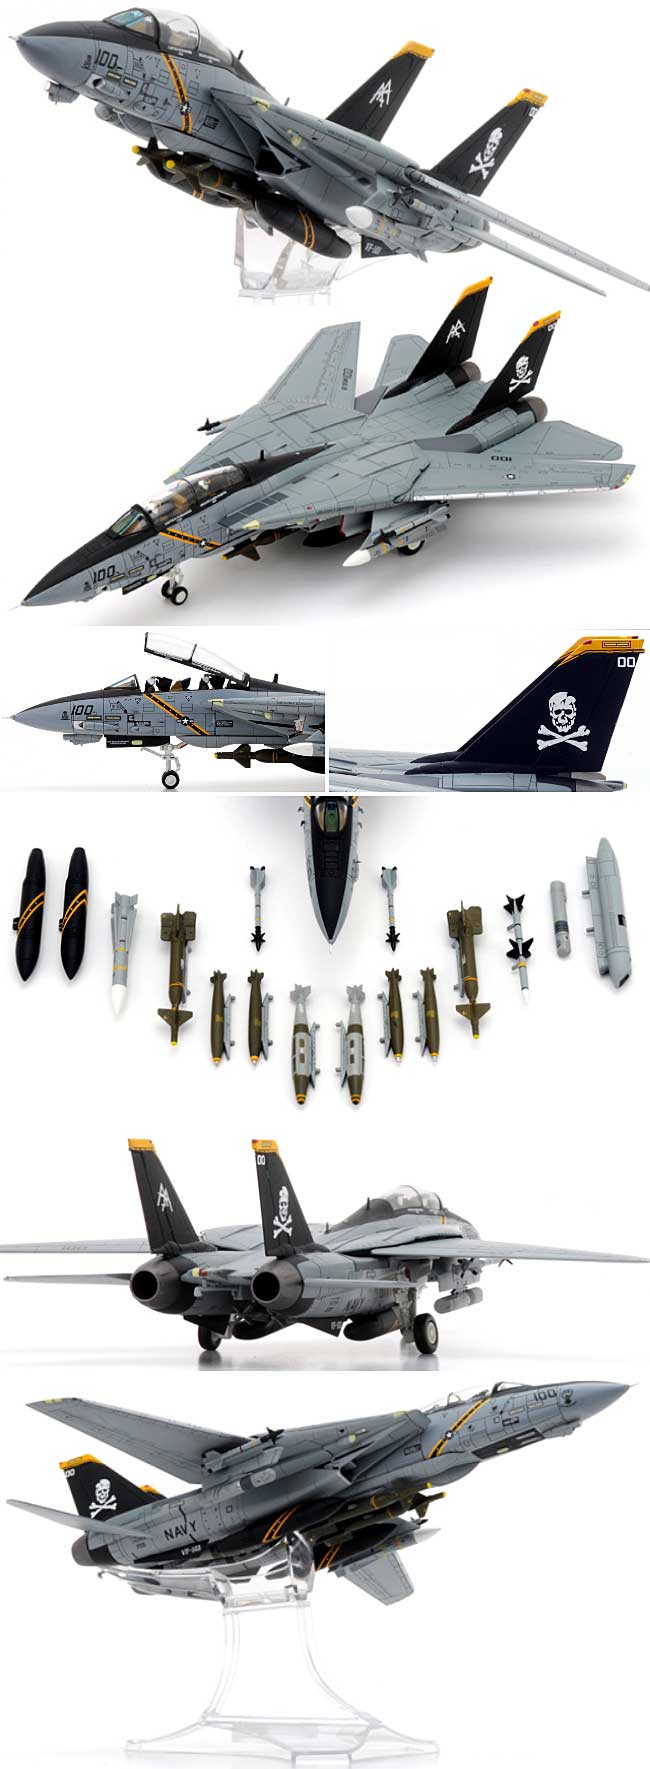 F-14B トムキャット VF-103 ジョリーロジャース AA100 (2004年) 完成品 (センチュリー ウイングス 1/72 ダイキャストモデル エアプレーン No.714144) 商品画像_1